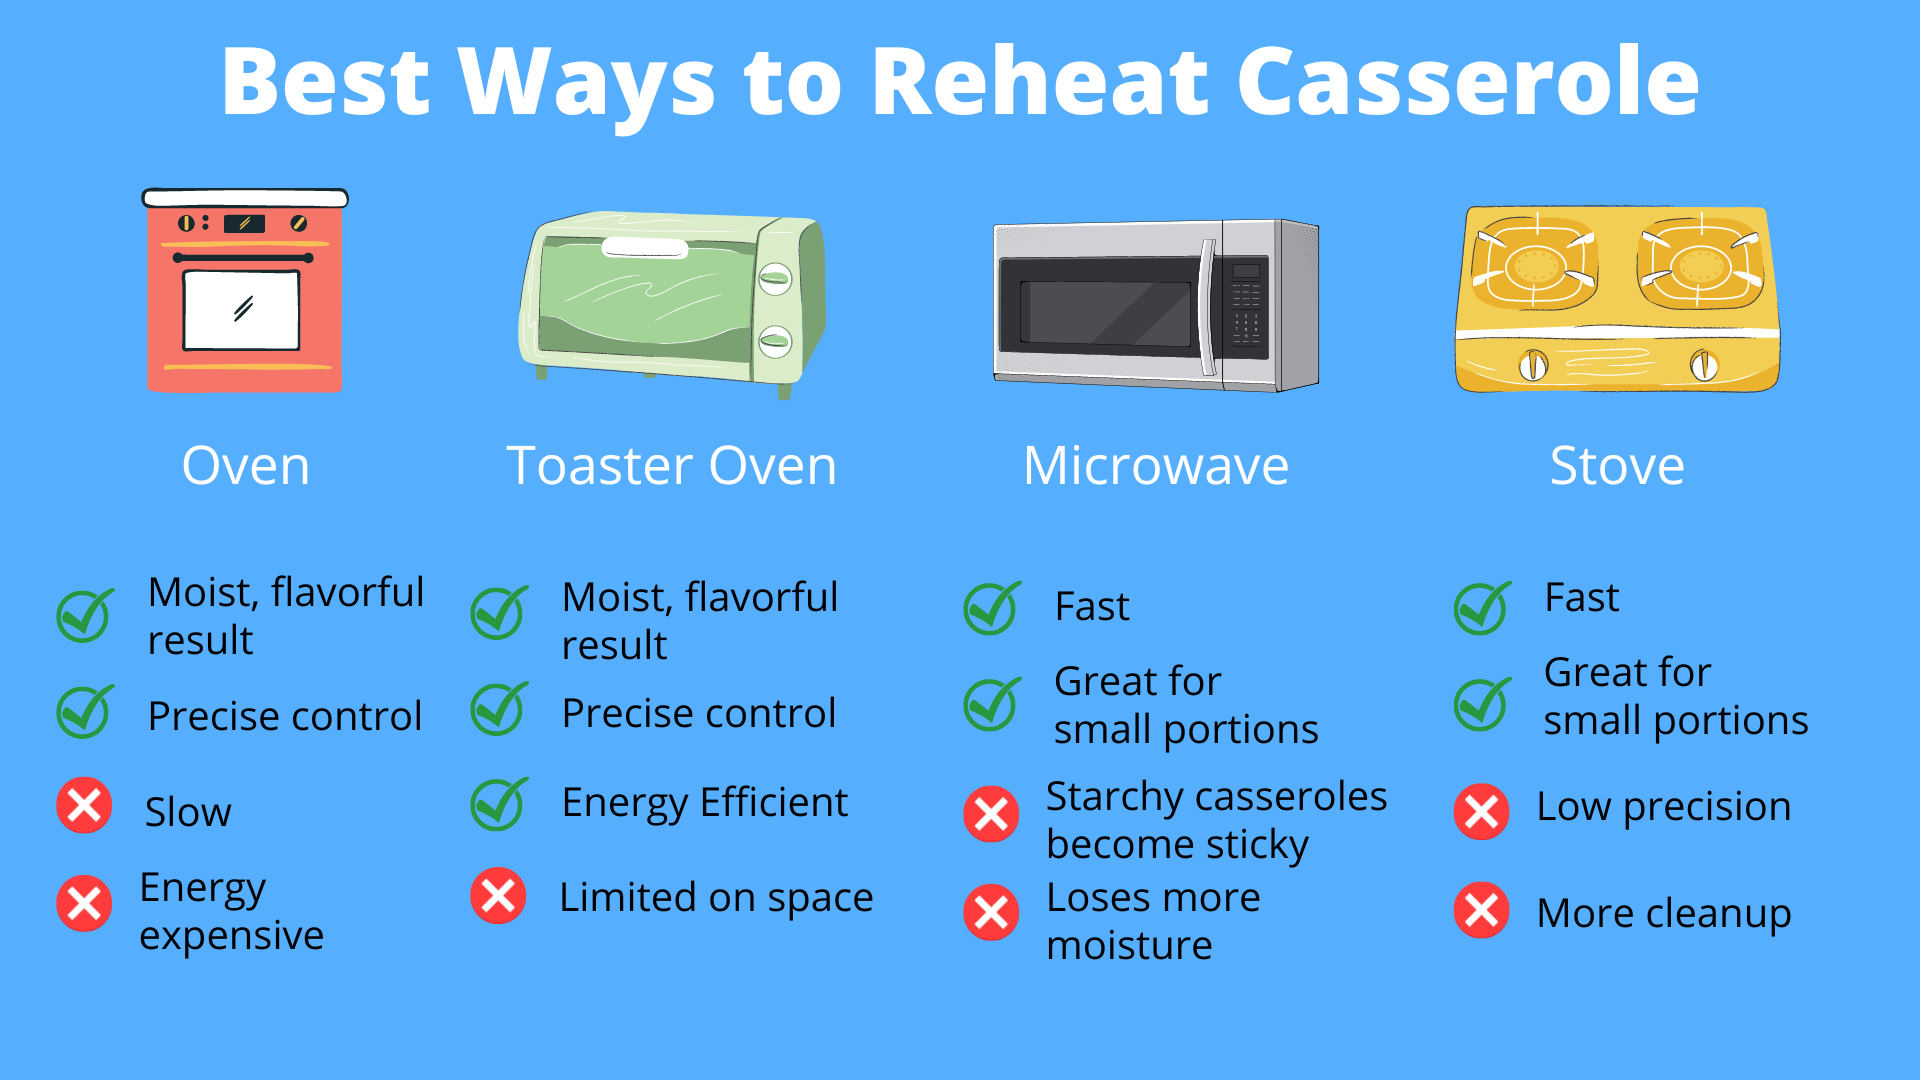 Best Ways to Reheat Casserole Infographic